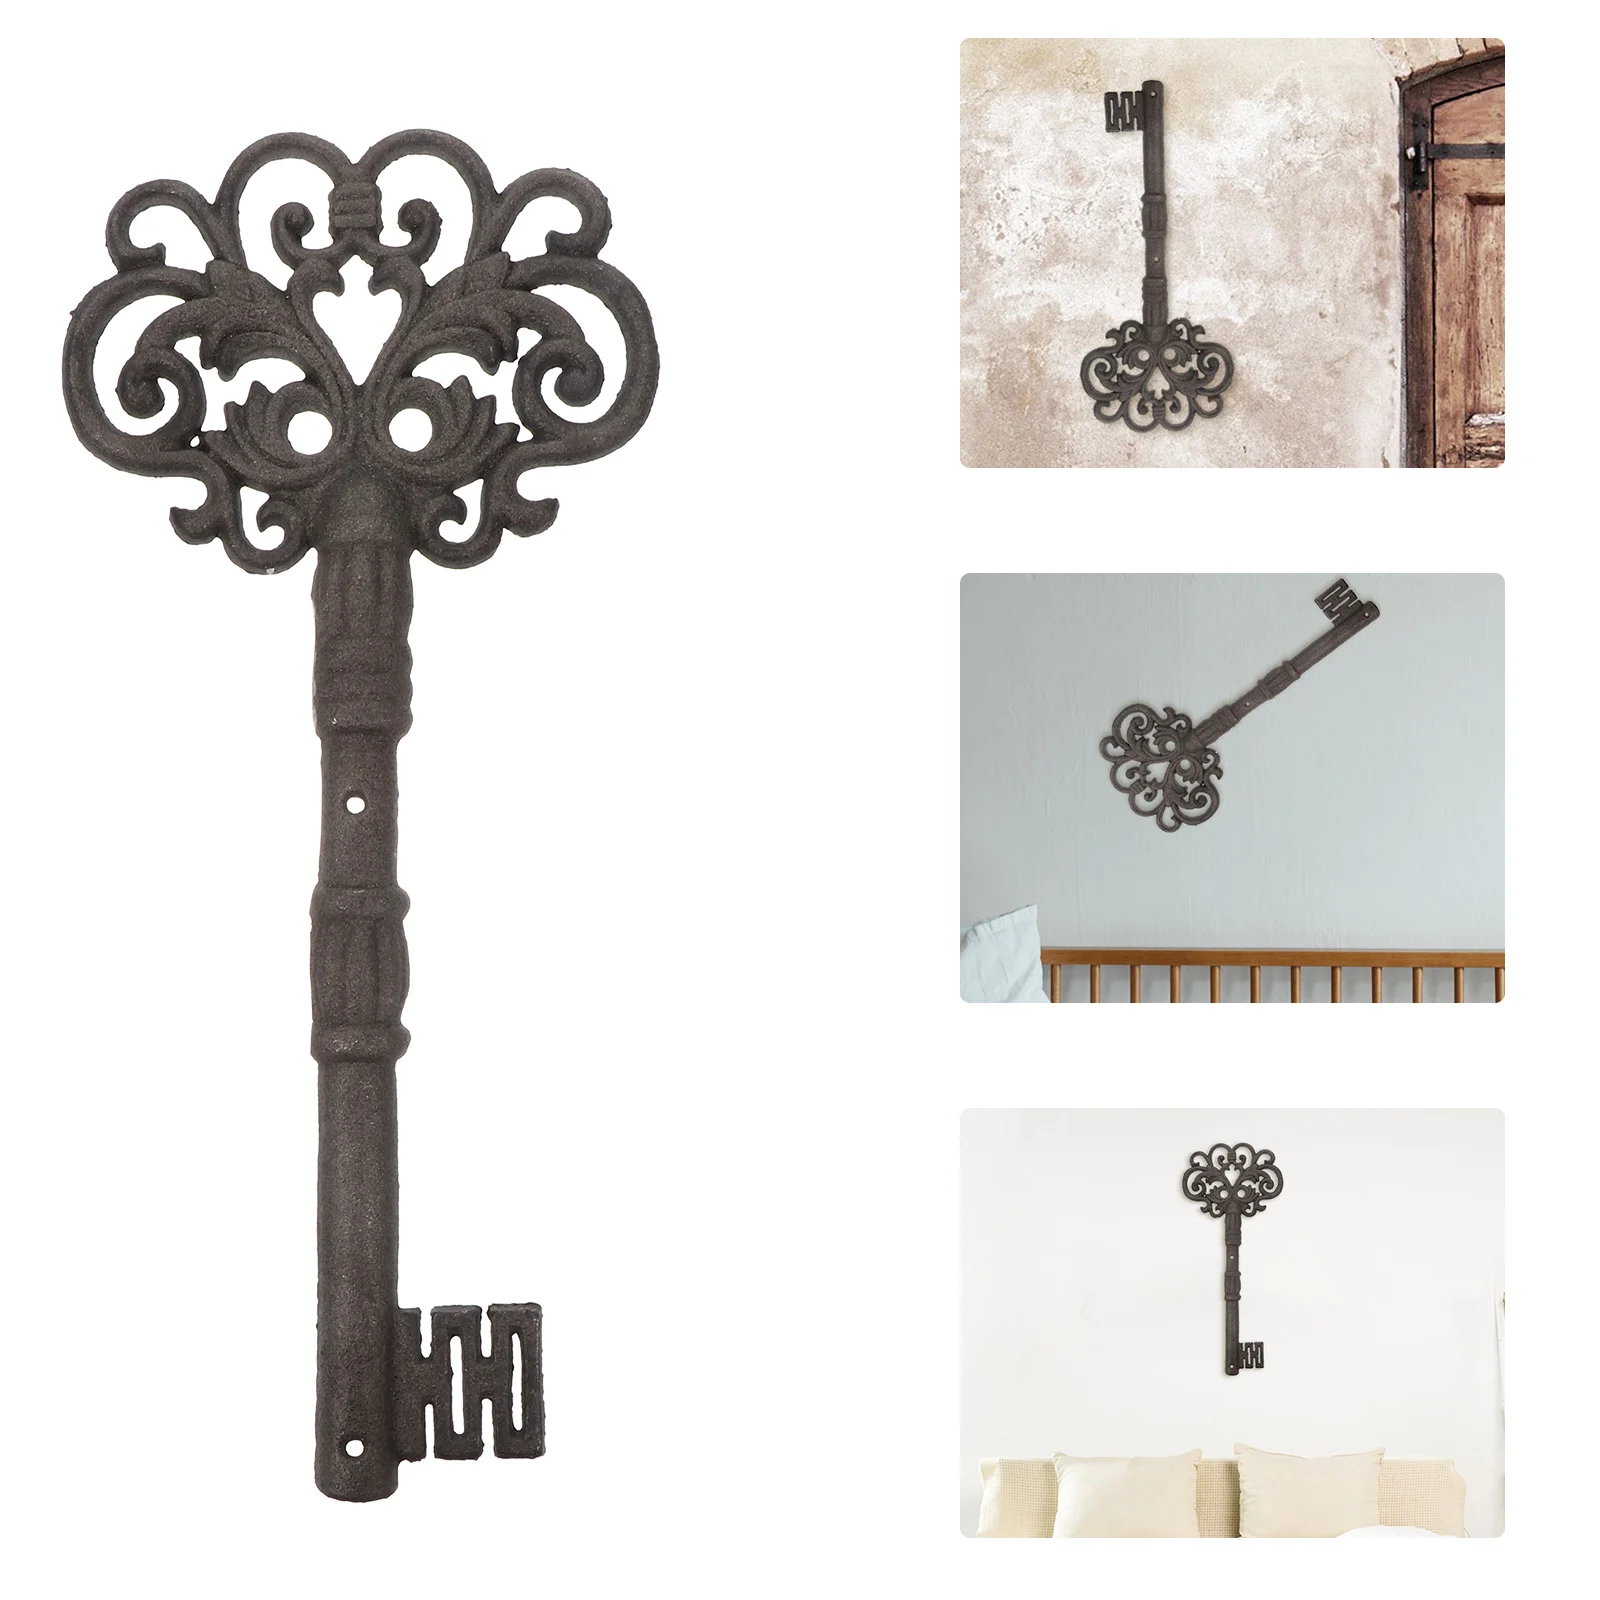 

Чугунные аксессуары для ключей, реквизит «Секретная камера», «Приключения», «Древние ключи», украшение для дома в стиле ретро